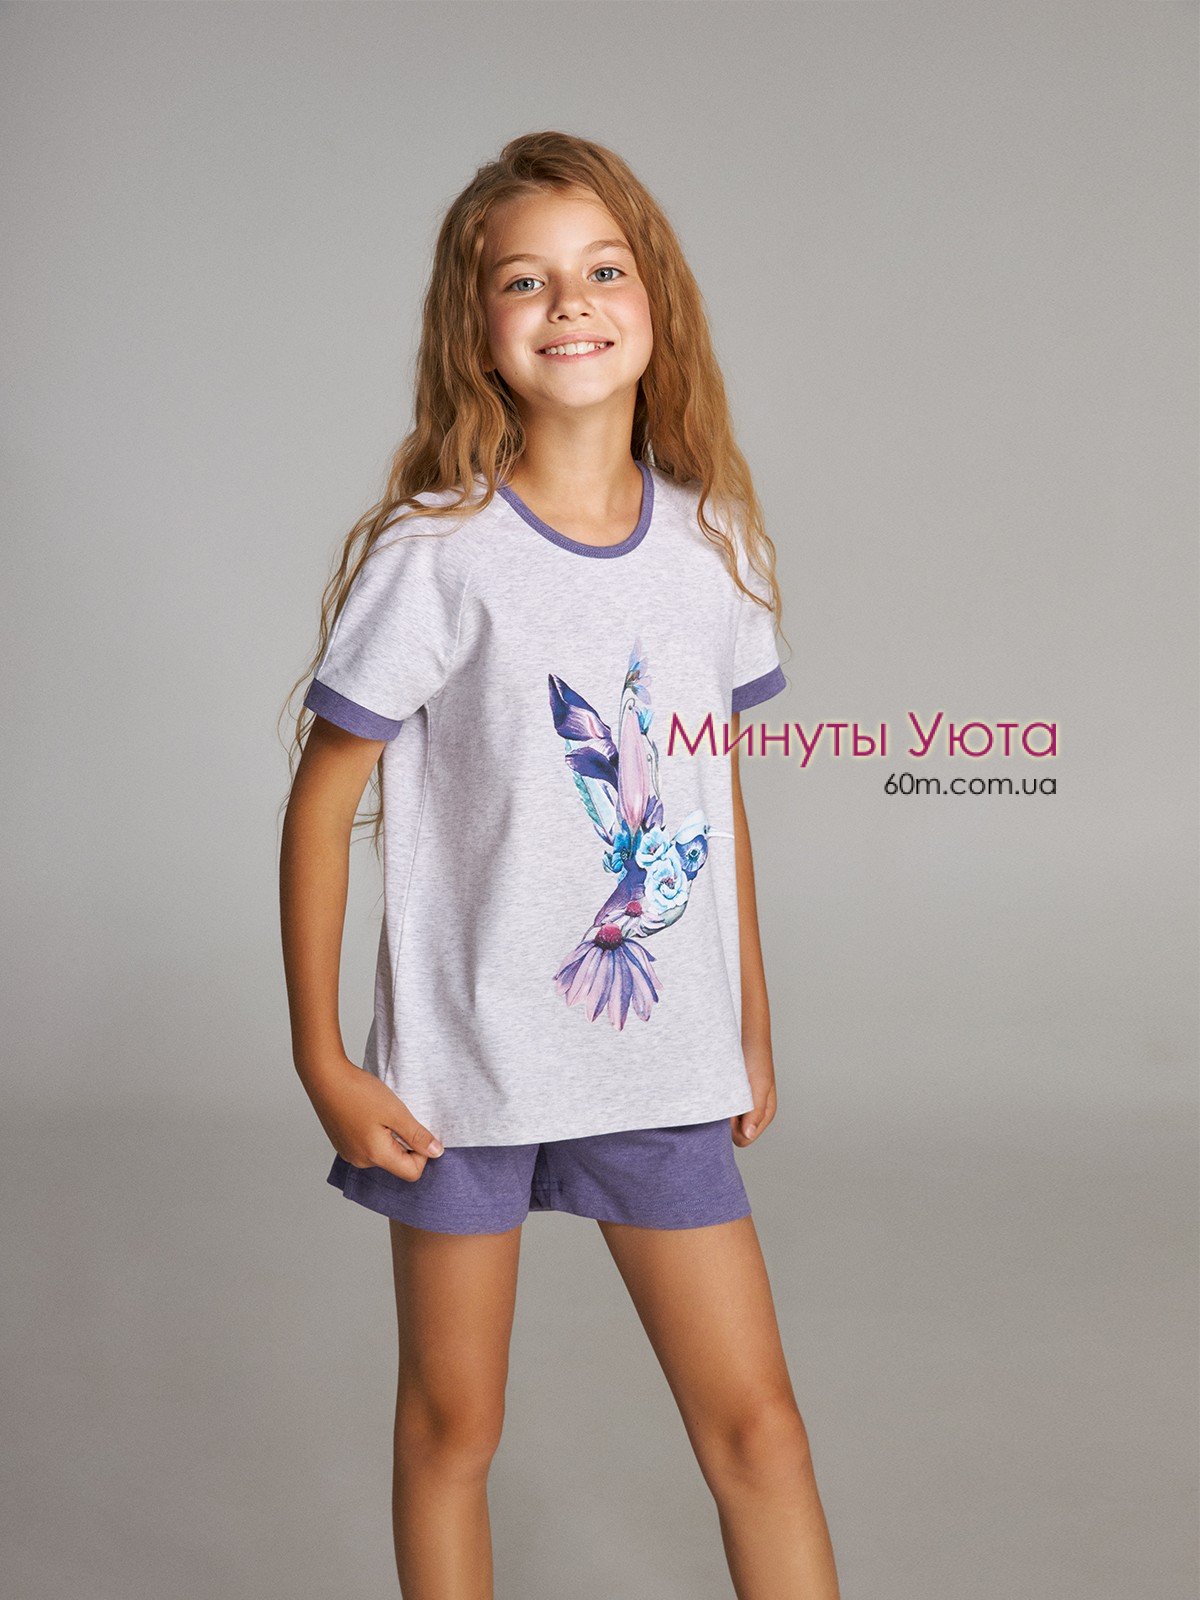 Летняя пижама для девочки серо-фиолетового цвета с принтом колибри на футболке Ellen